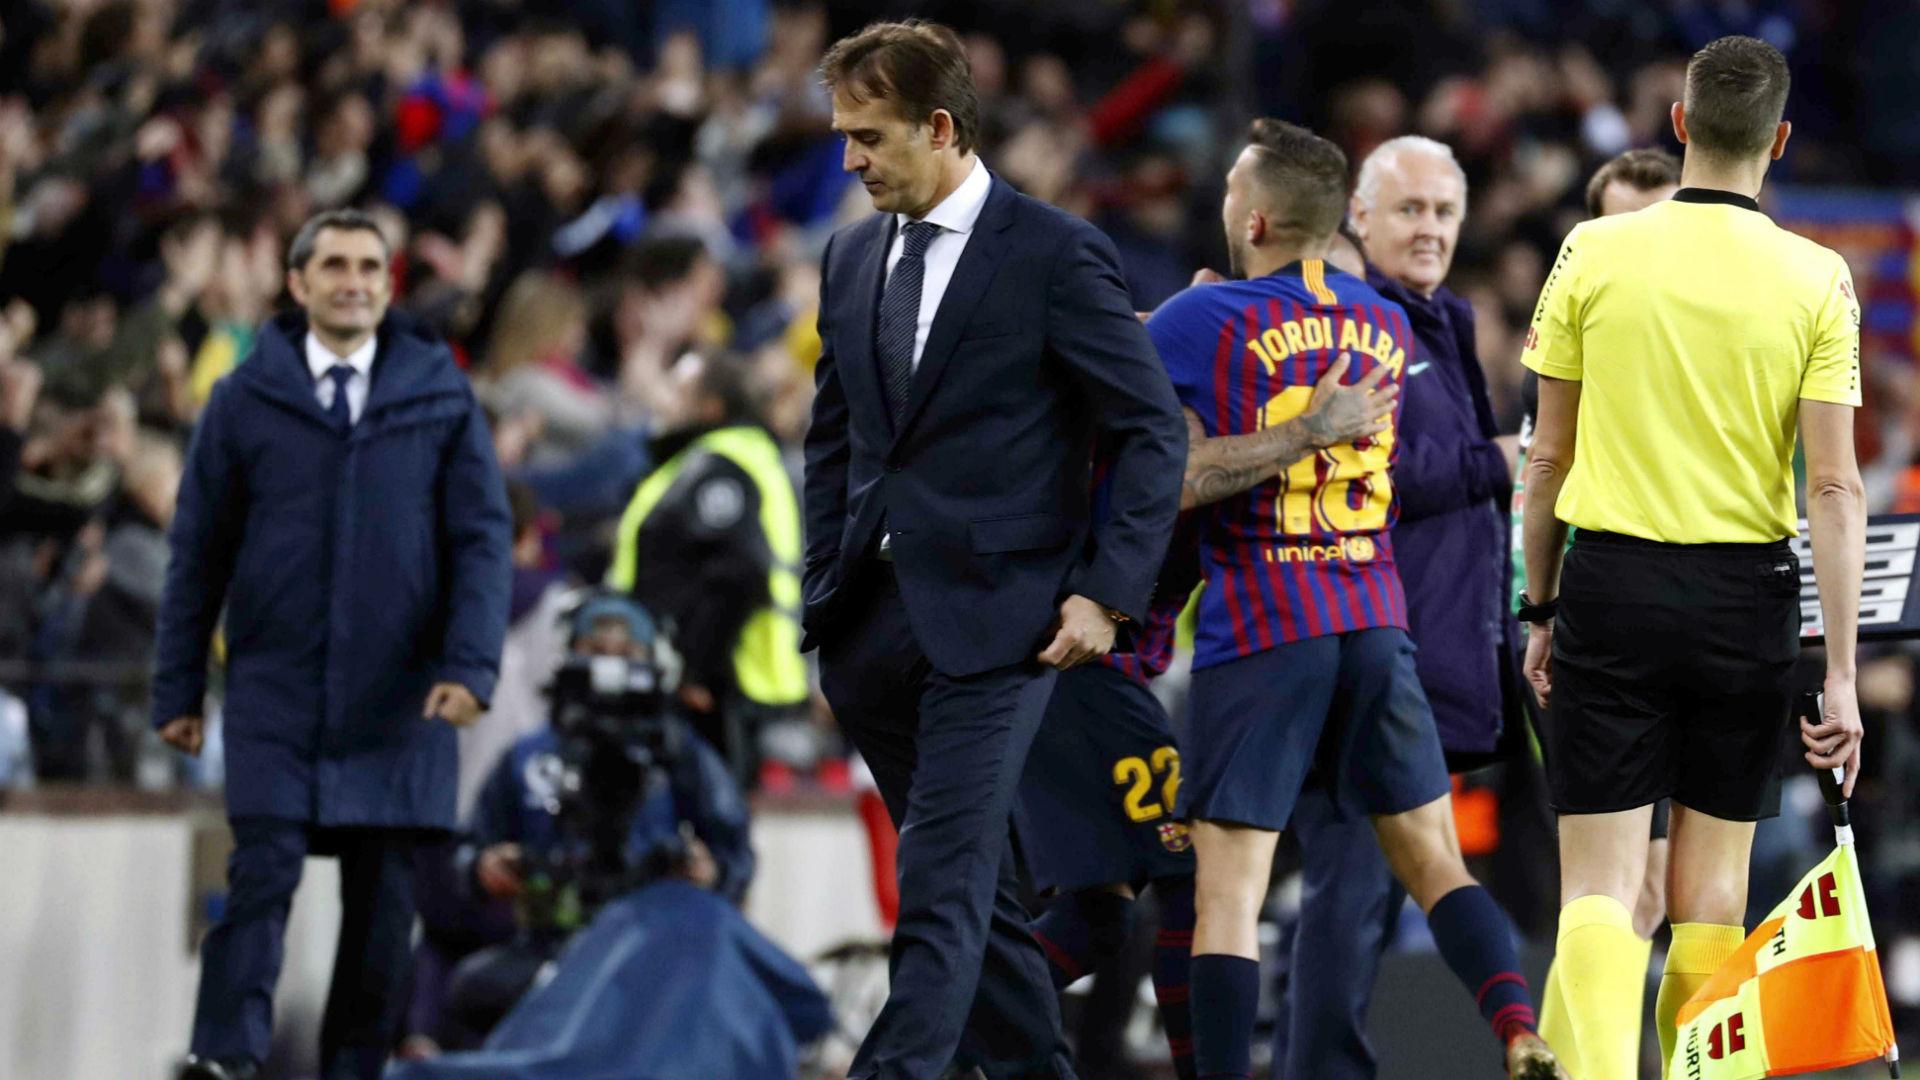 Hiszpańskie media po El Clasico: "szalony mecz" na Camp Nou. Suarez udowodnił, że można zastąpić Messiego 